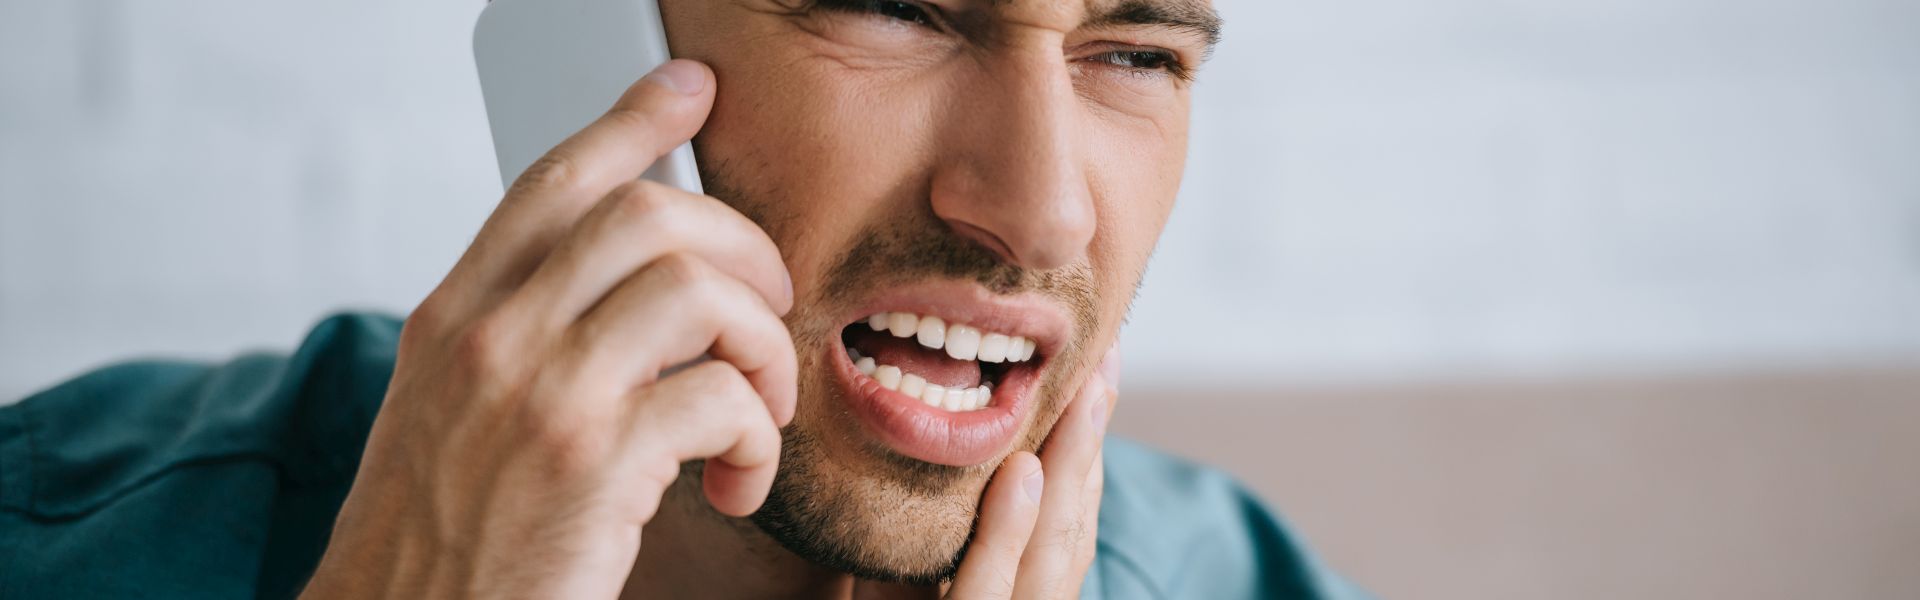 domowe sposoby na ból zęba